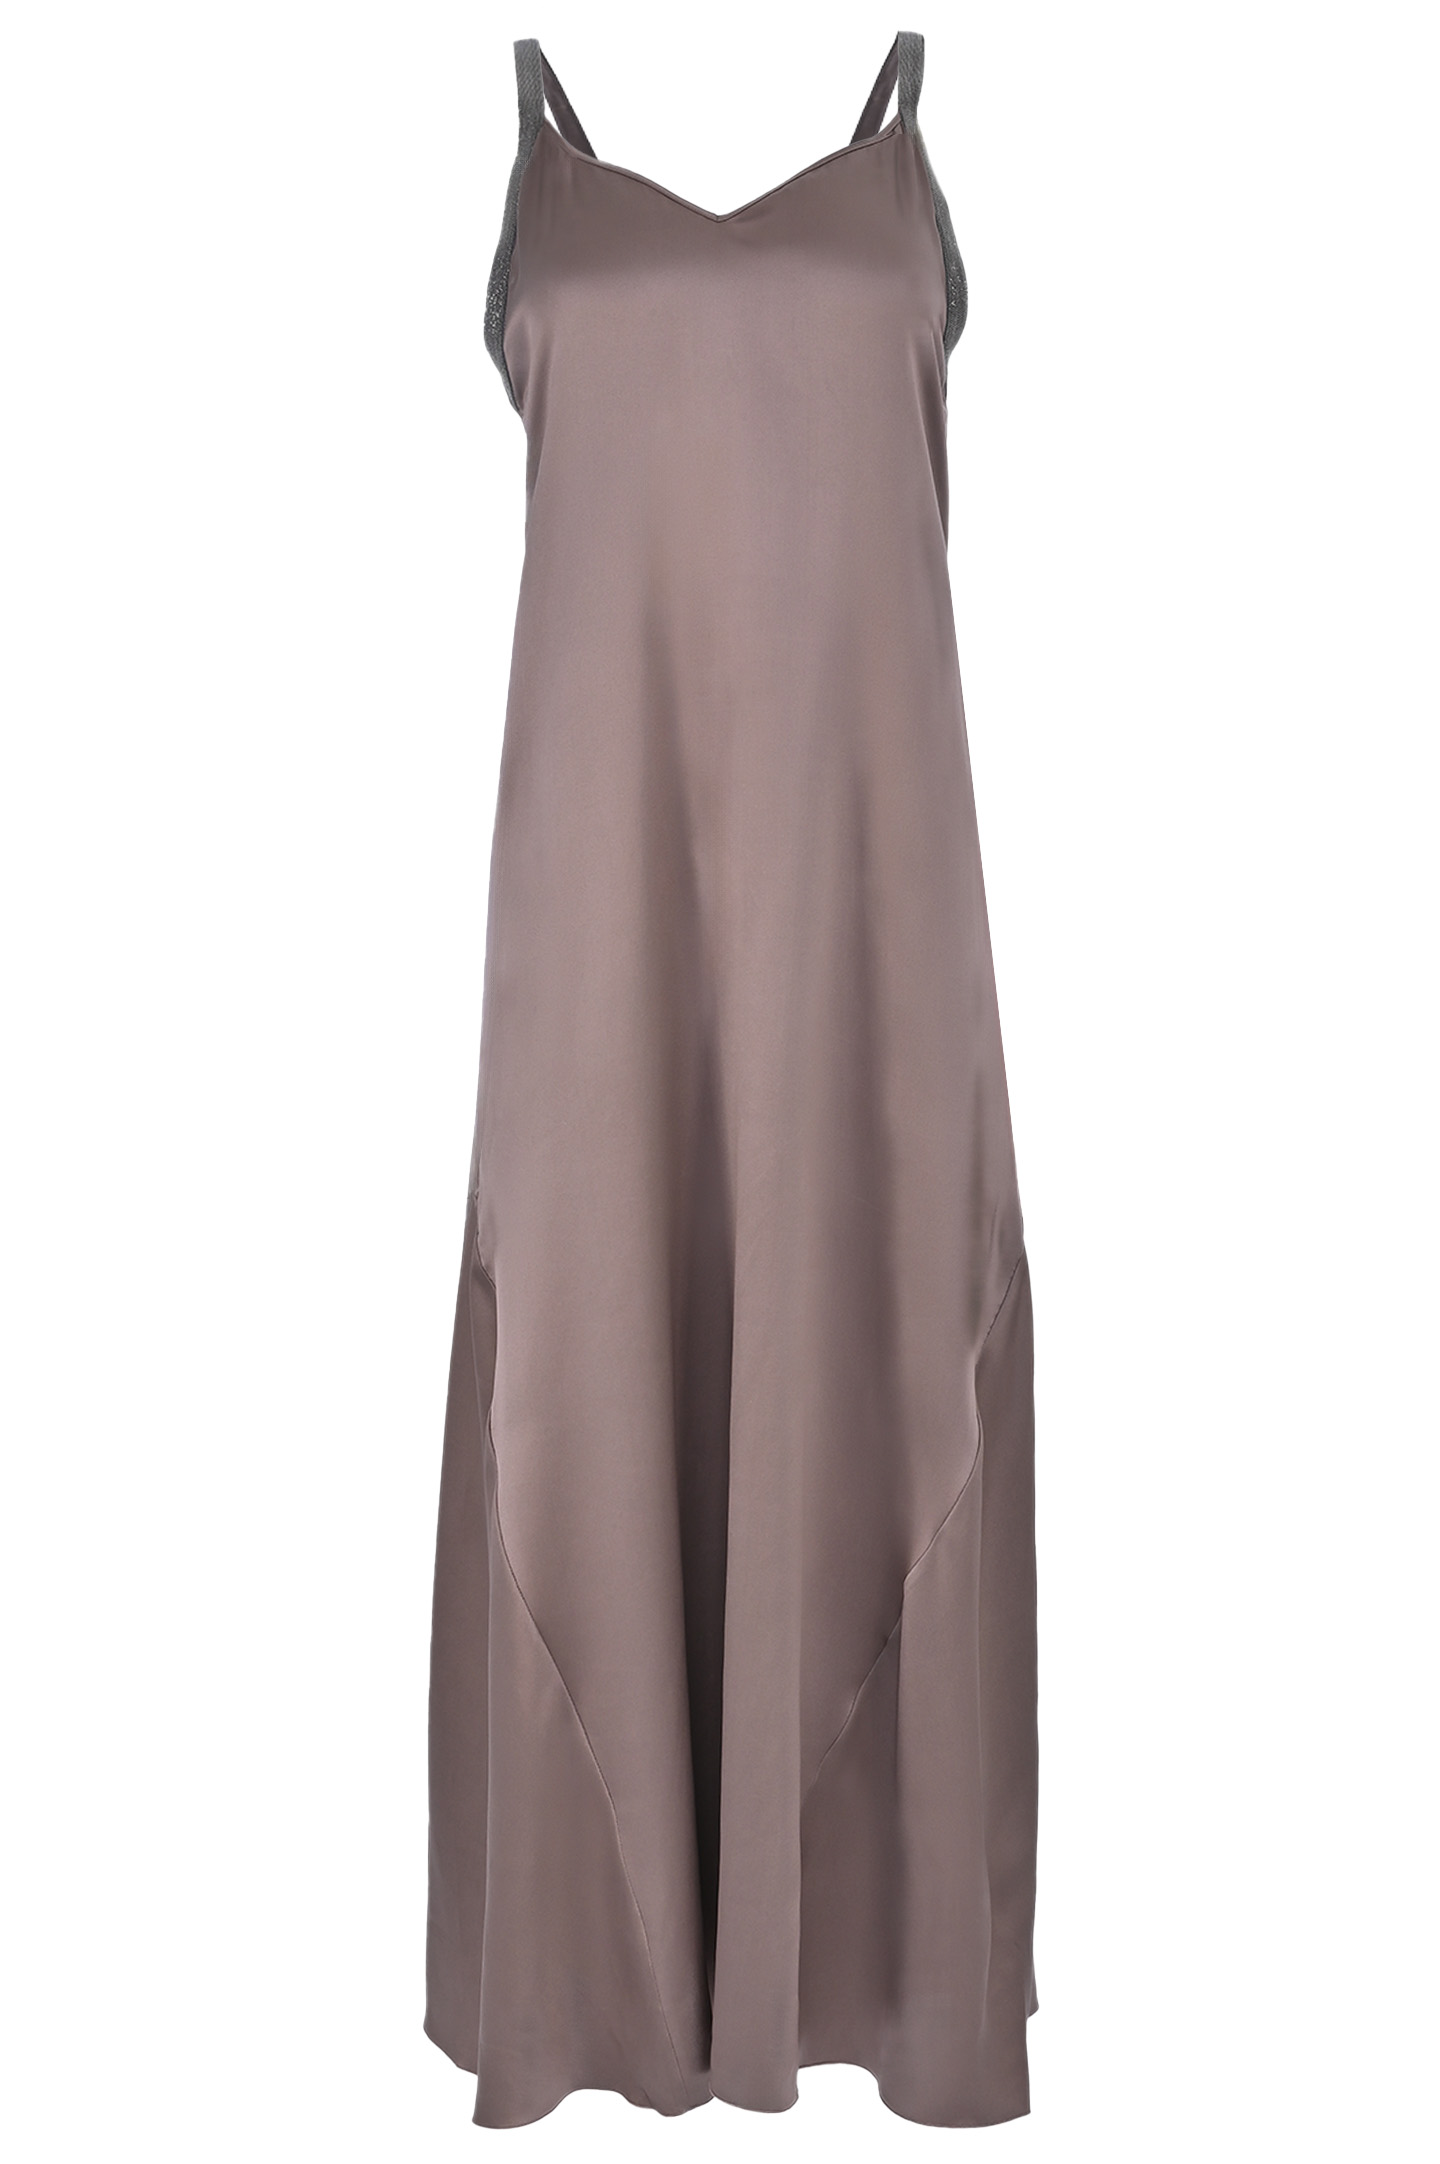 Платье FABIANA FILIPPI ABD223F504, цвет: Коричневый, Женский